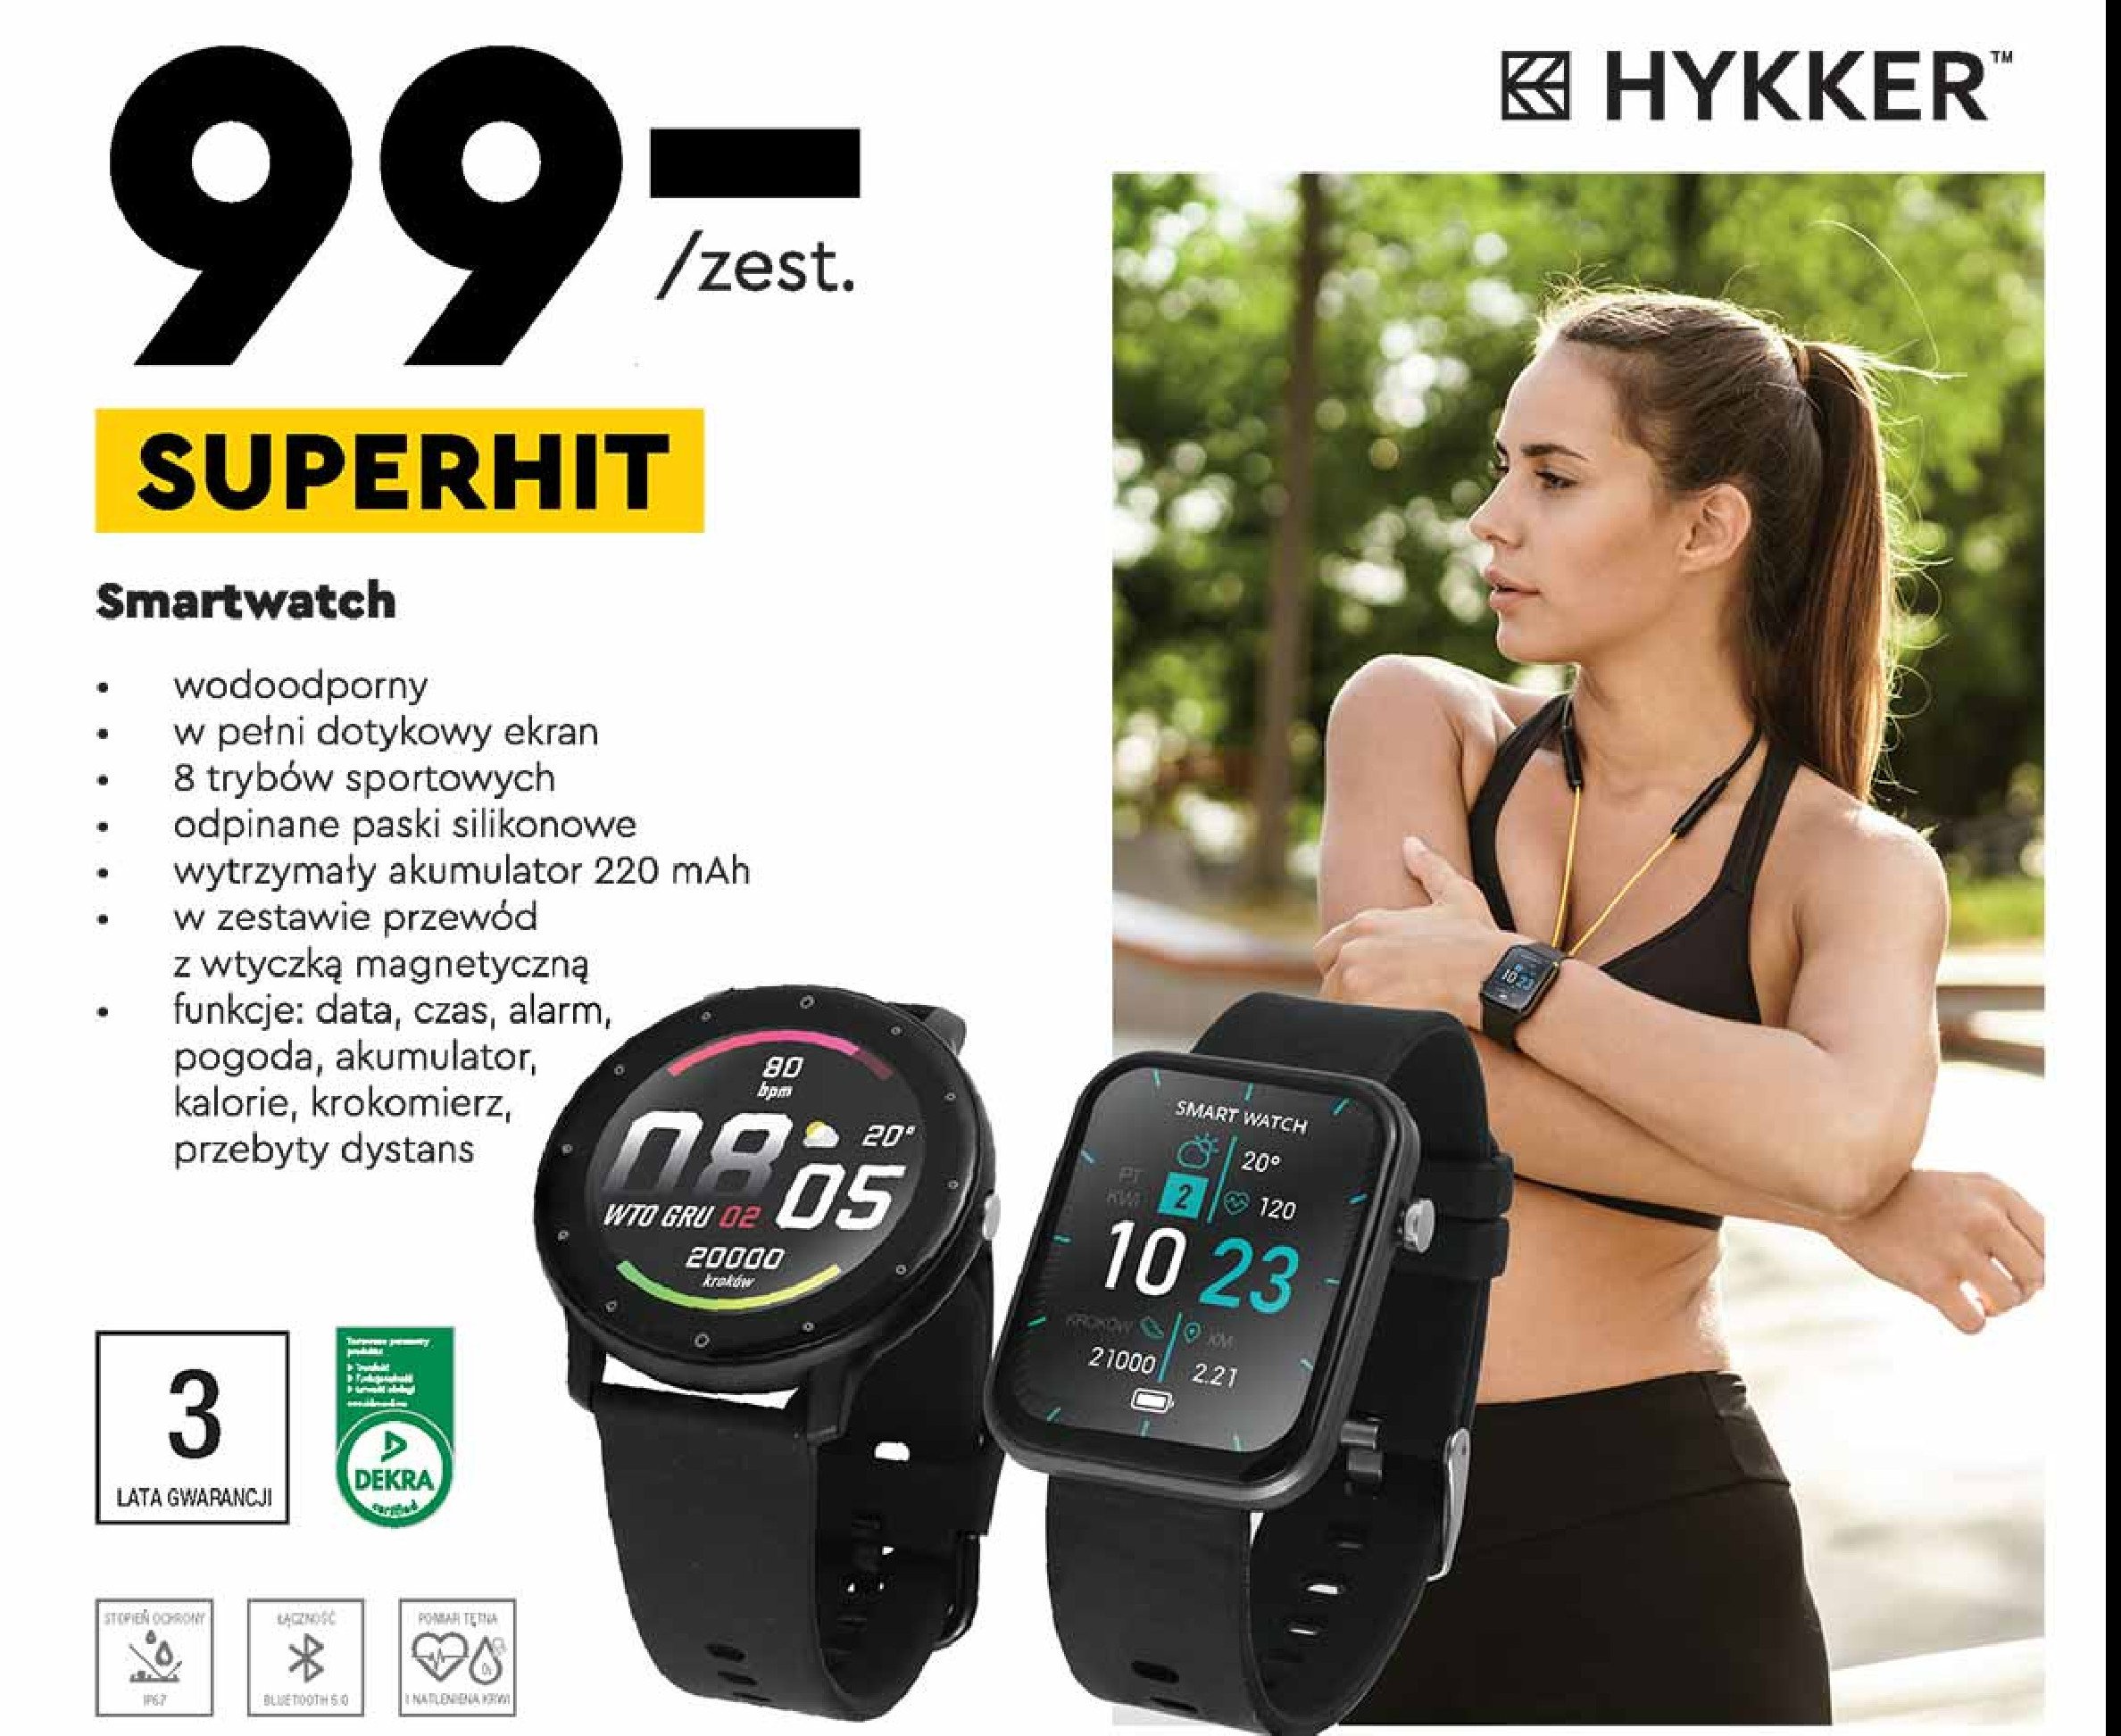 Smartwatch Hykker promocja